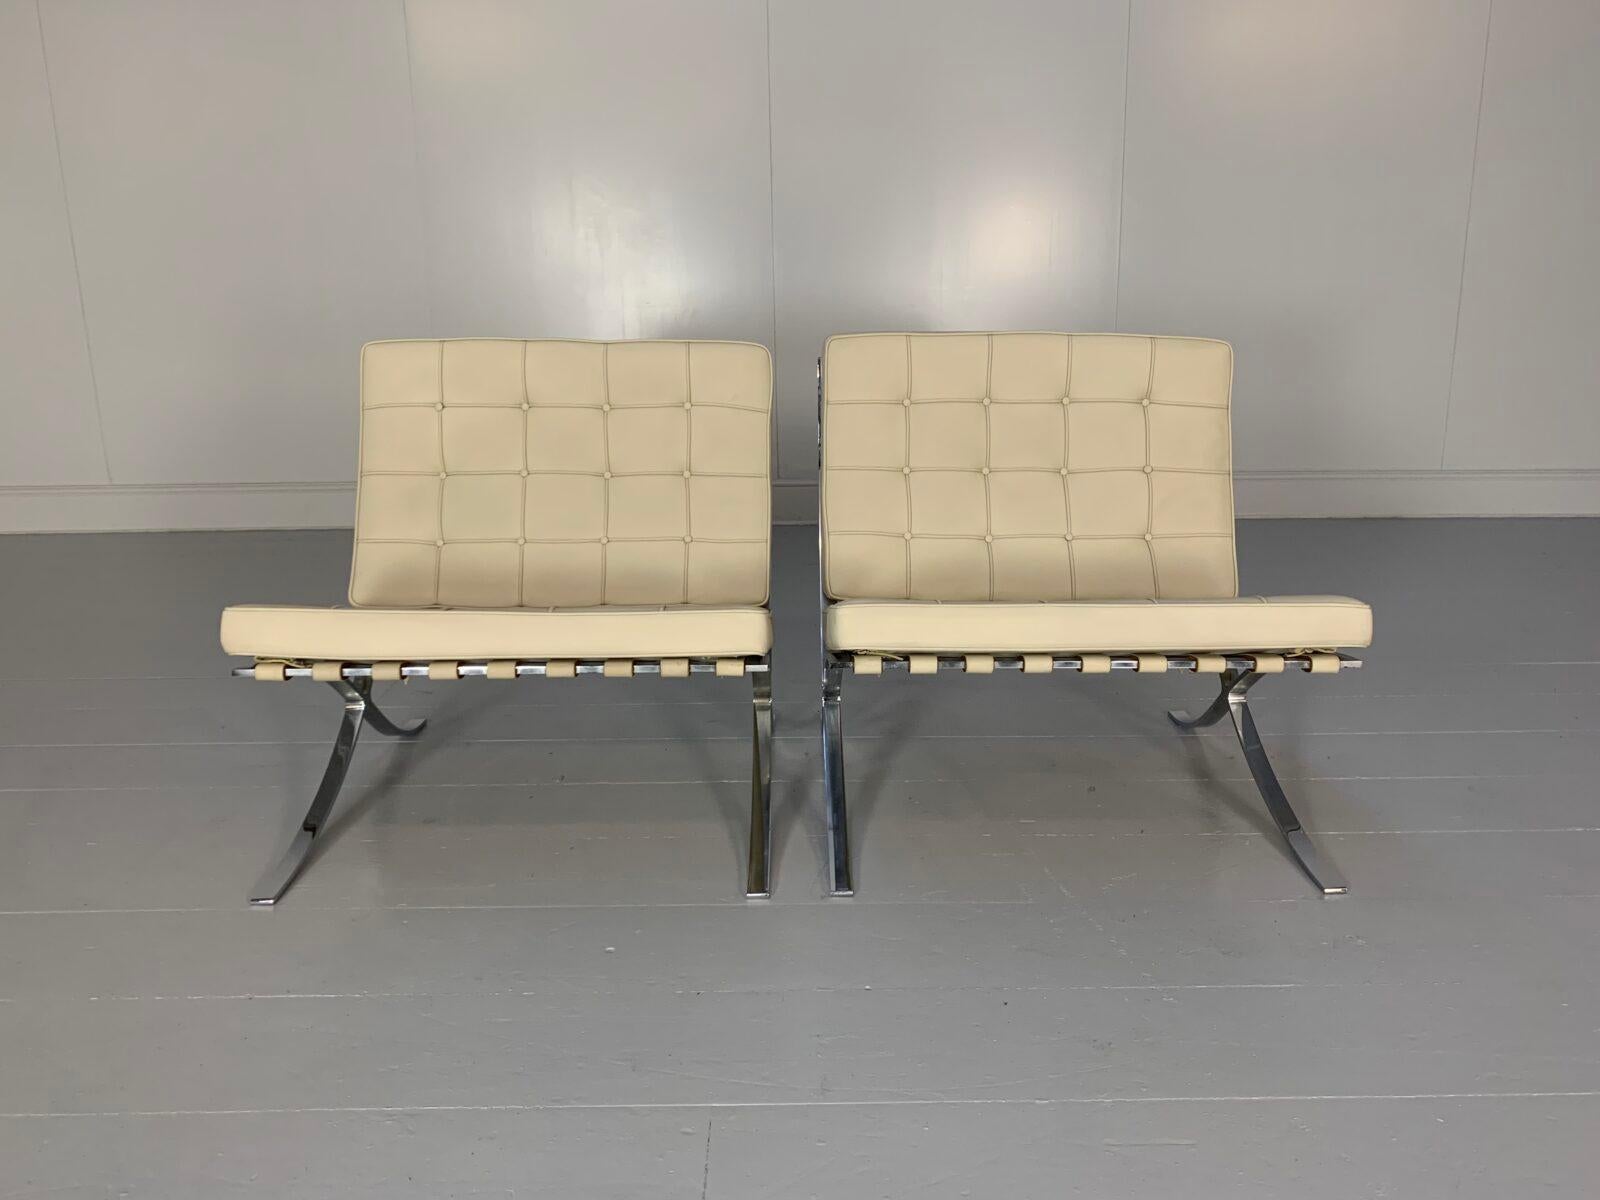 Nous vous proposons une paire rare, identique et originale de chaises 